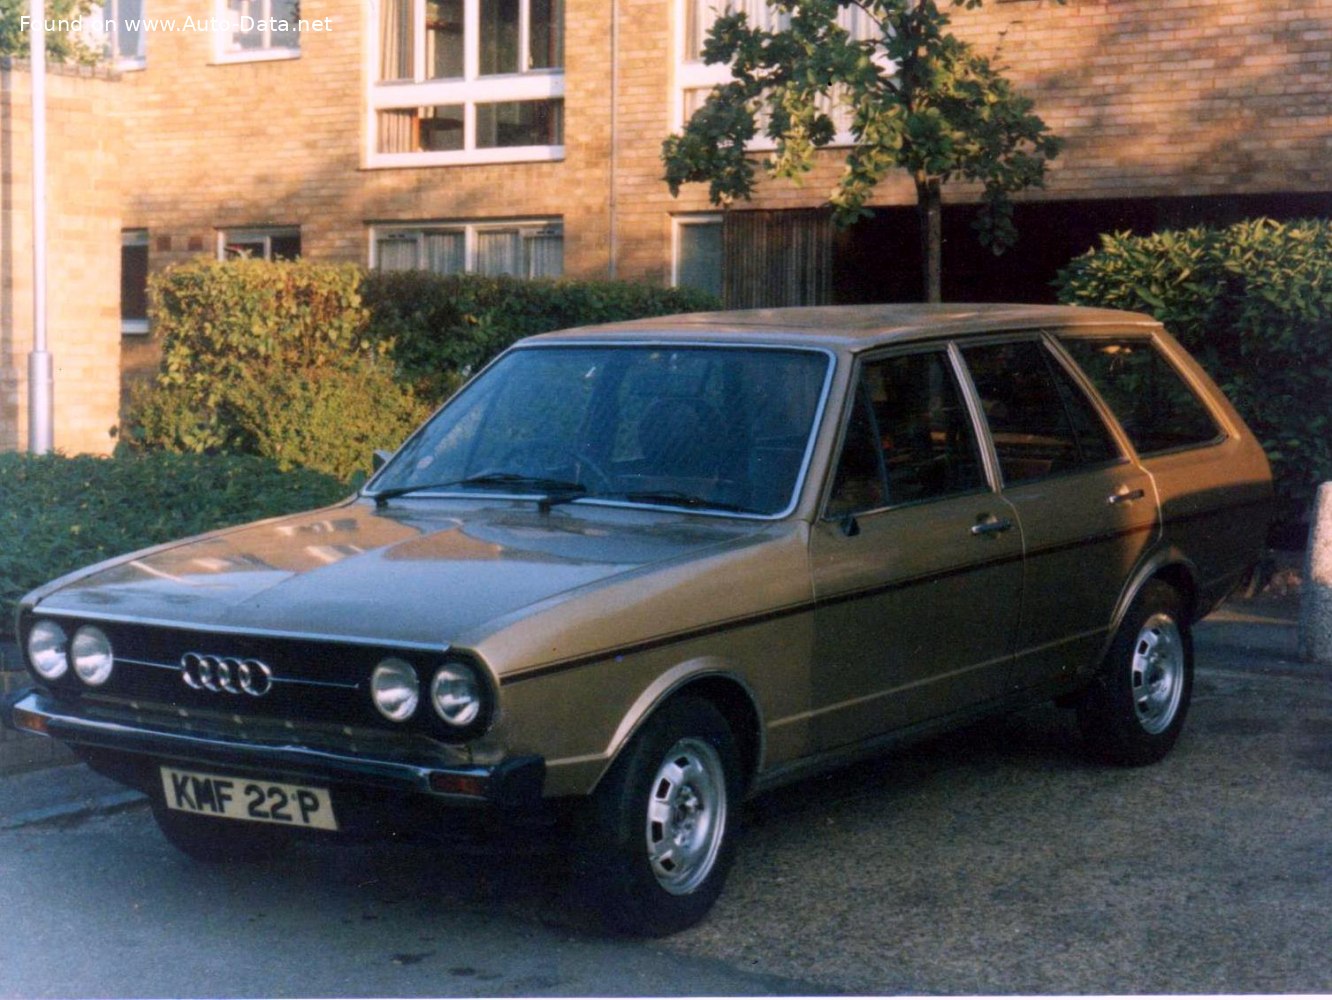 Unterwegs im Audi 80 L (1974): Die Straßen von Kottingwörth